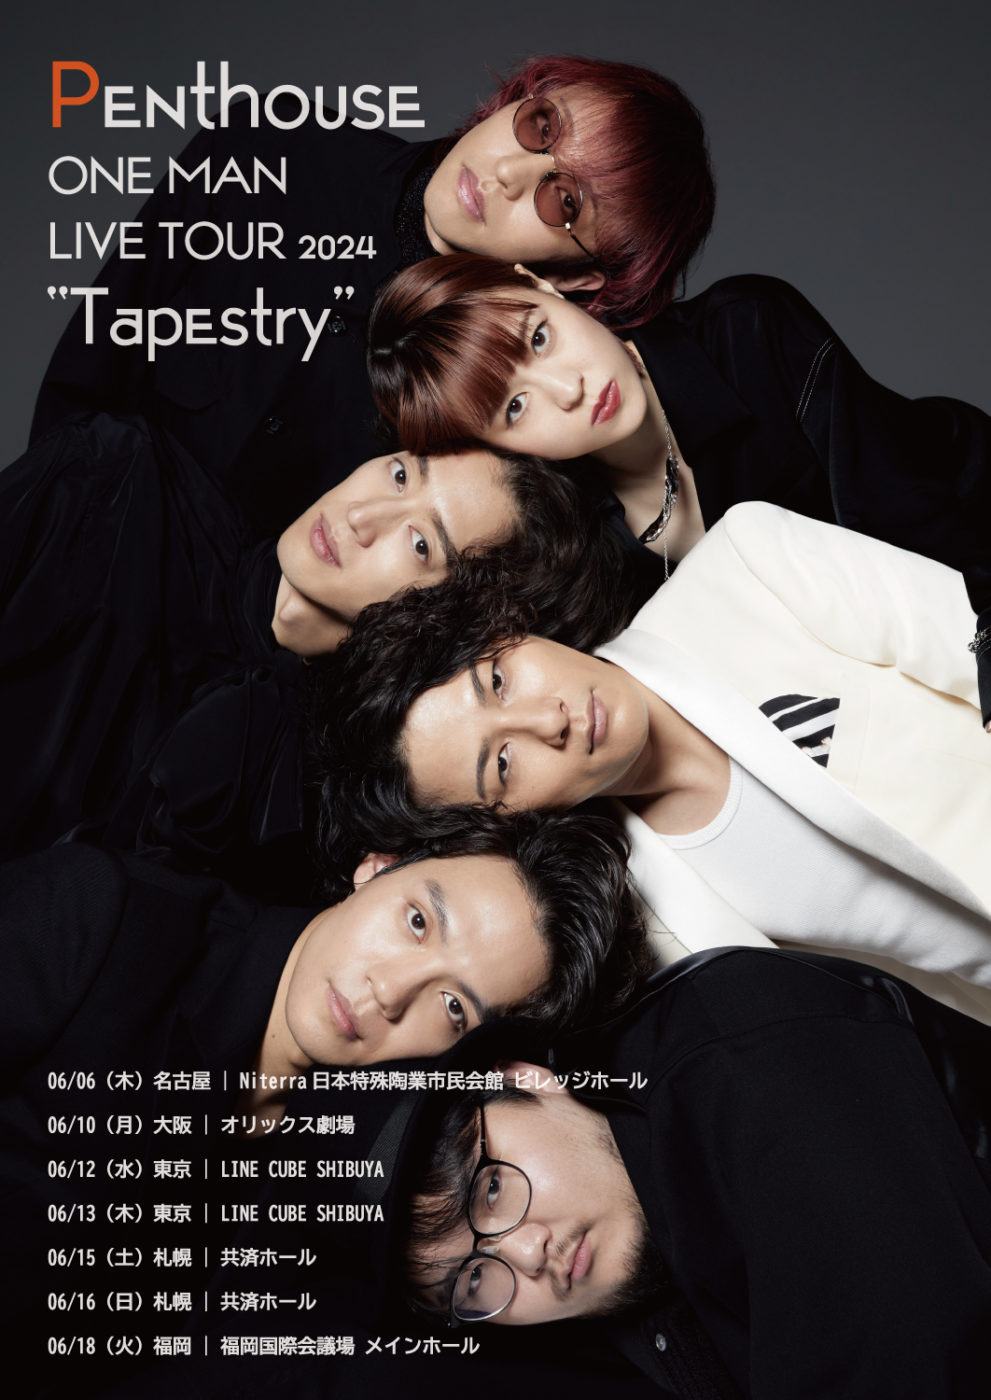 6月6日(木)Penthouse ONE MAN LIVE TOUR 2024 “Tapestry” at 名古屋 Niterra 日本特殊陶業市民会館ビレッジホール